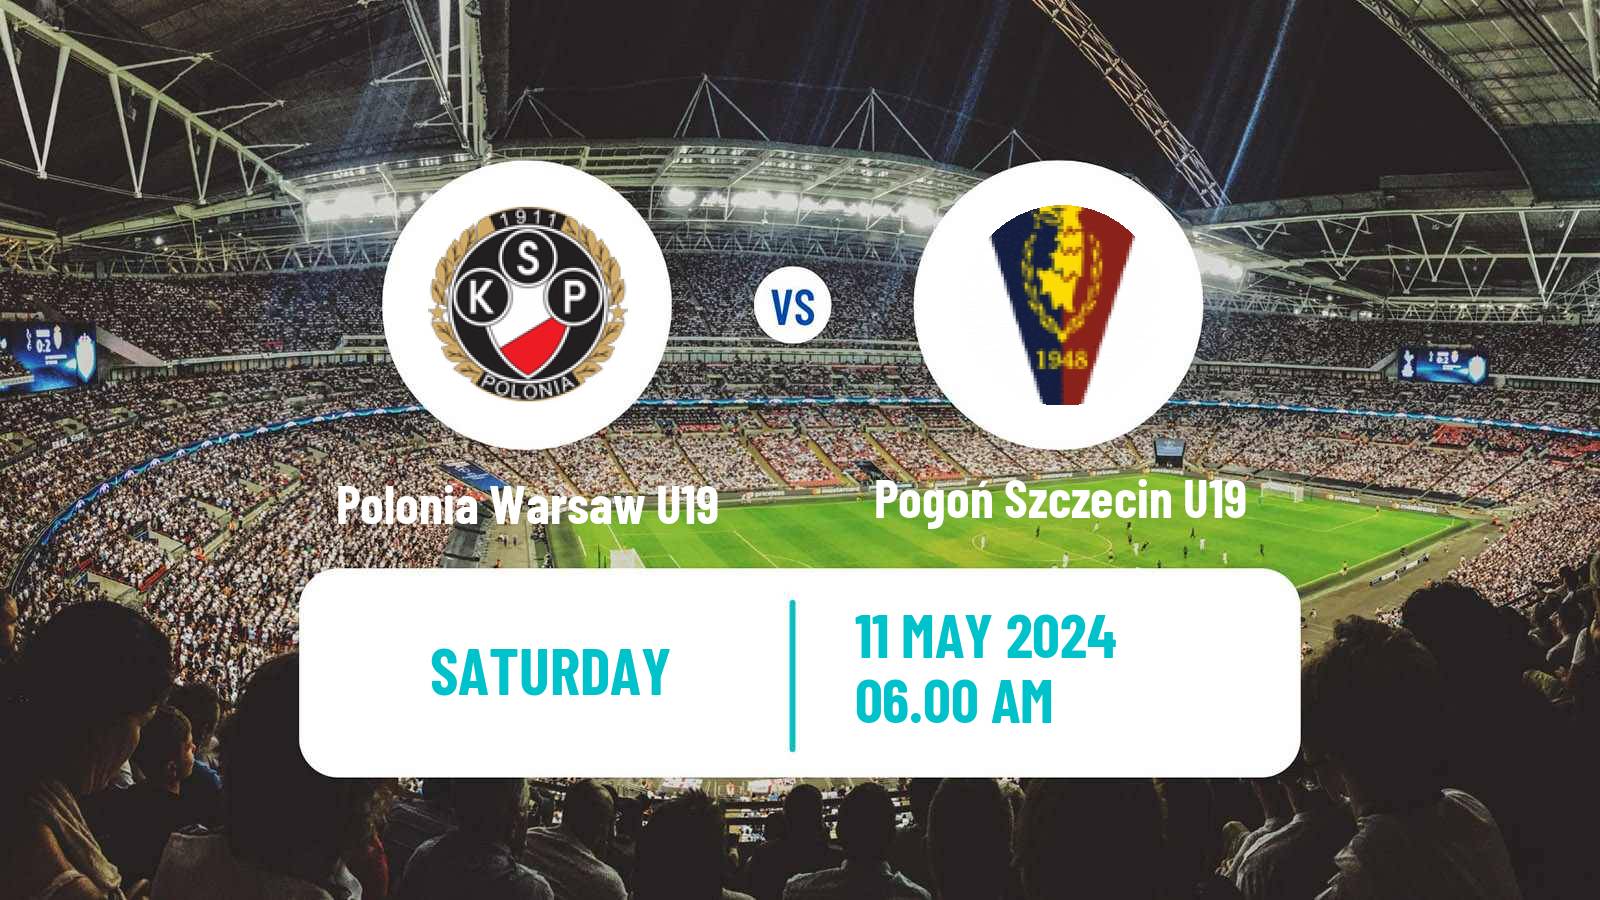 Soccer Polish Central Youth League Polonia Warsaw U19 - Pogoń Szczecin U19